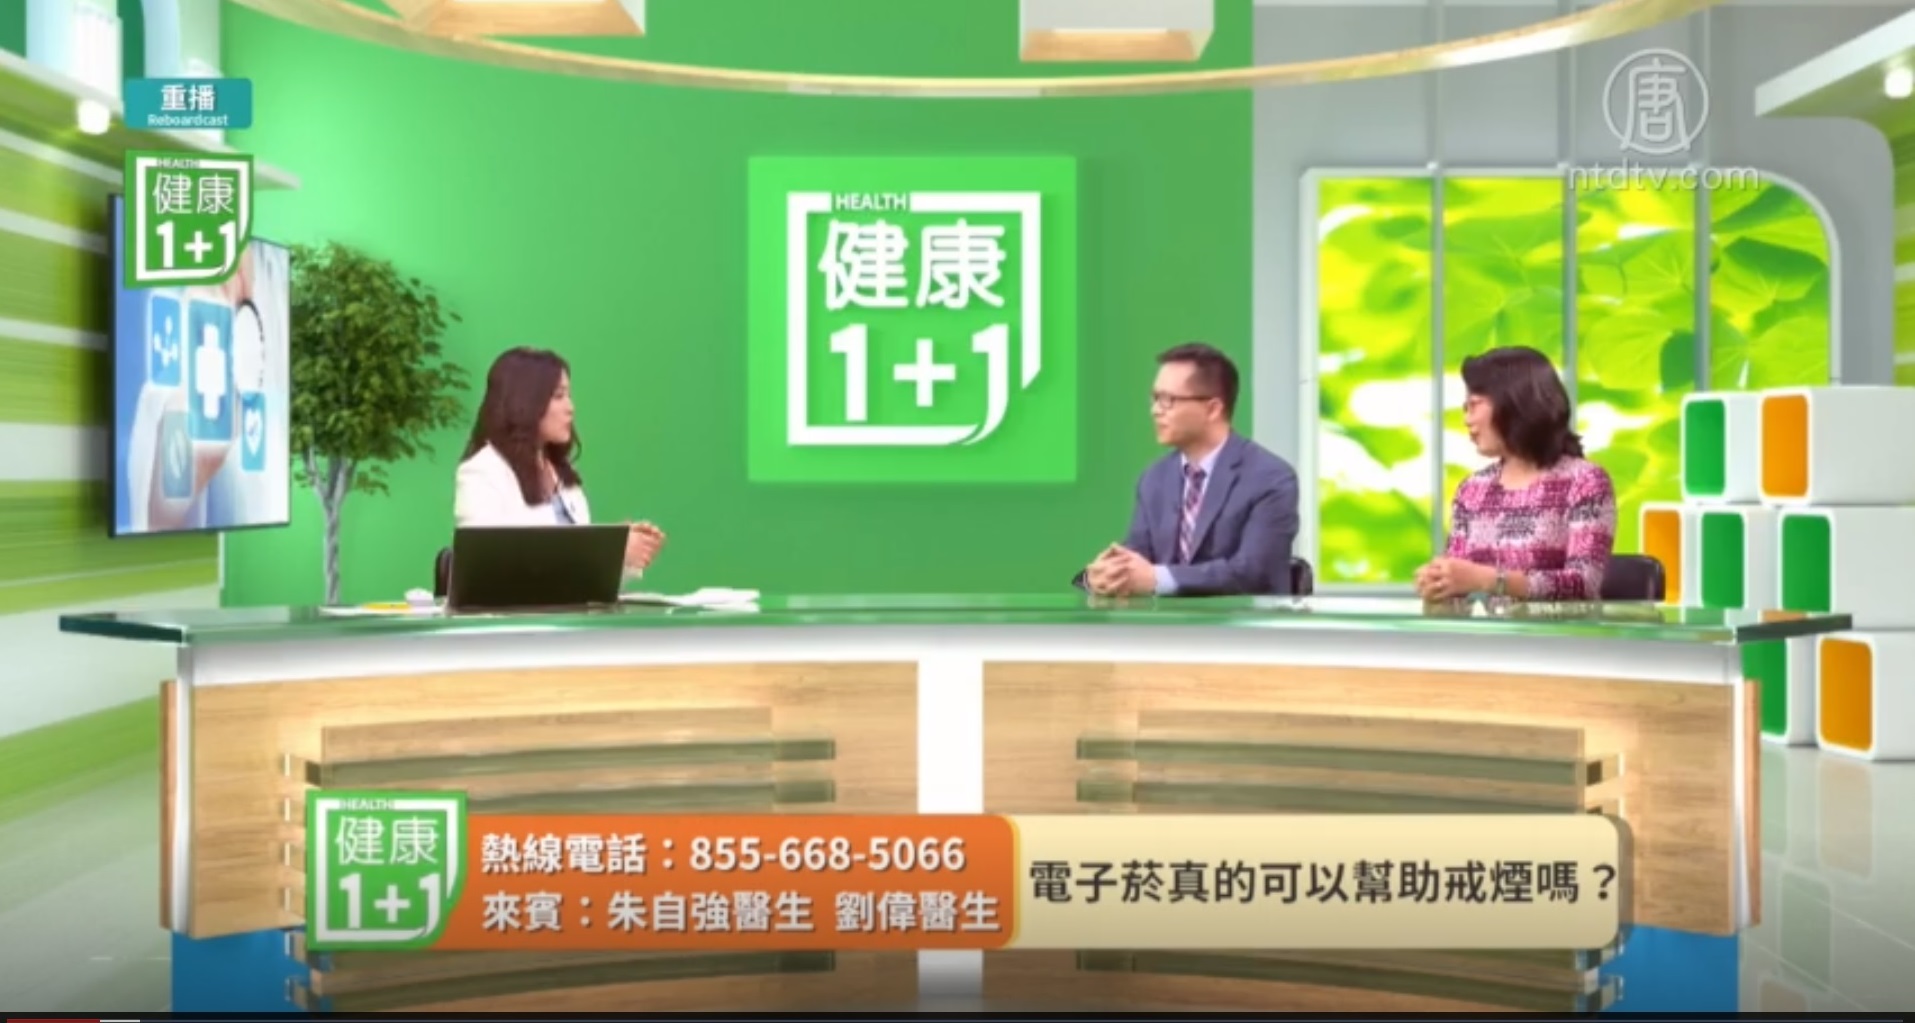 朱自强、刘伟医学博士应邀做客新唐人电视台健康1+1节目，谈最近热议的电子烟问题